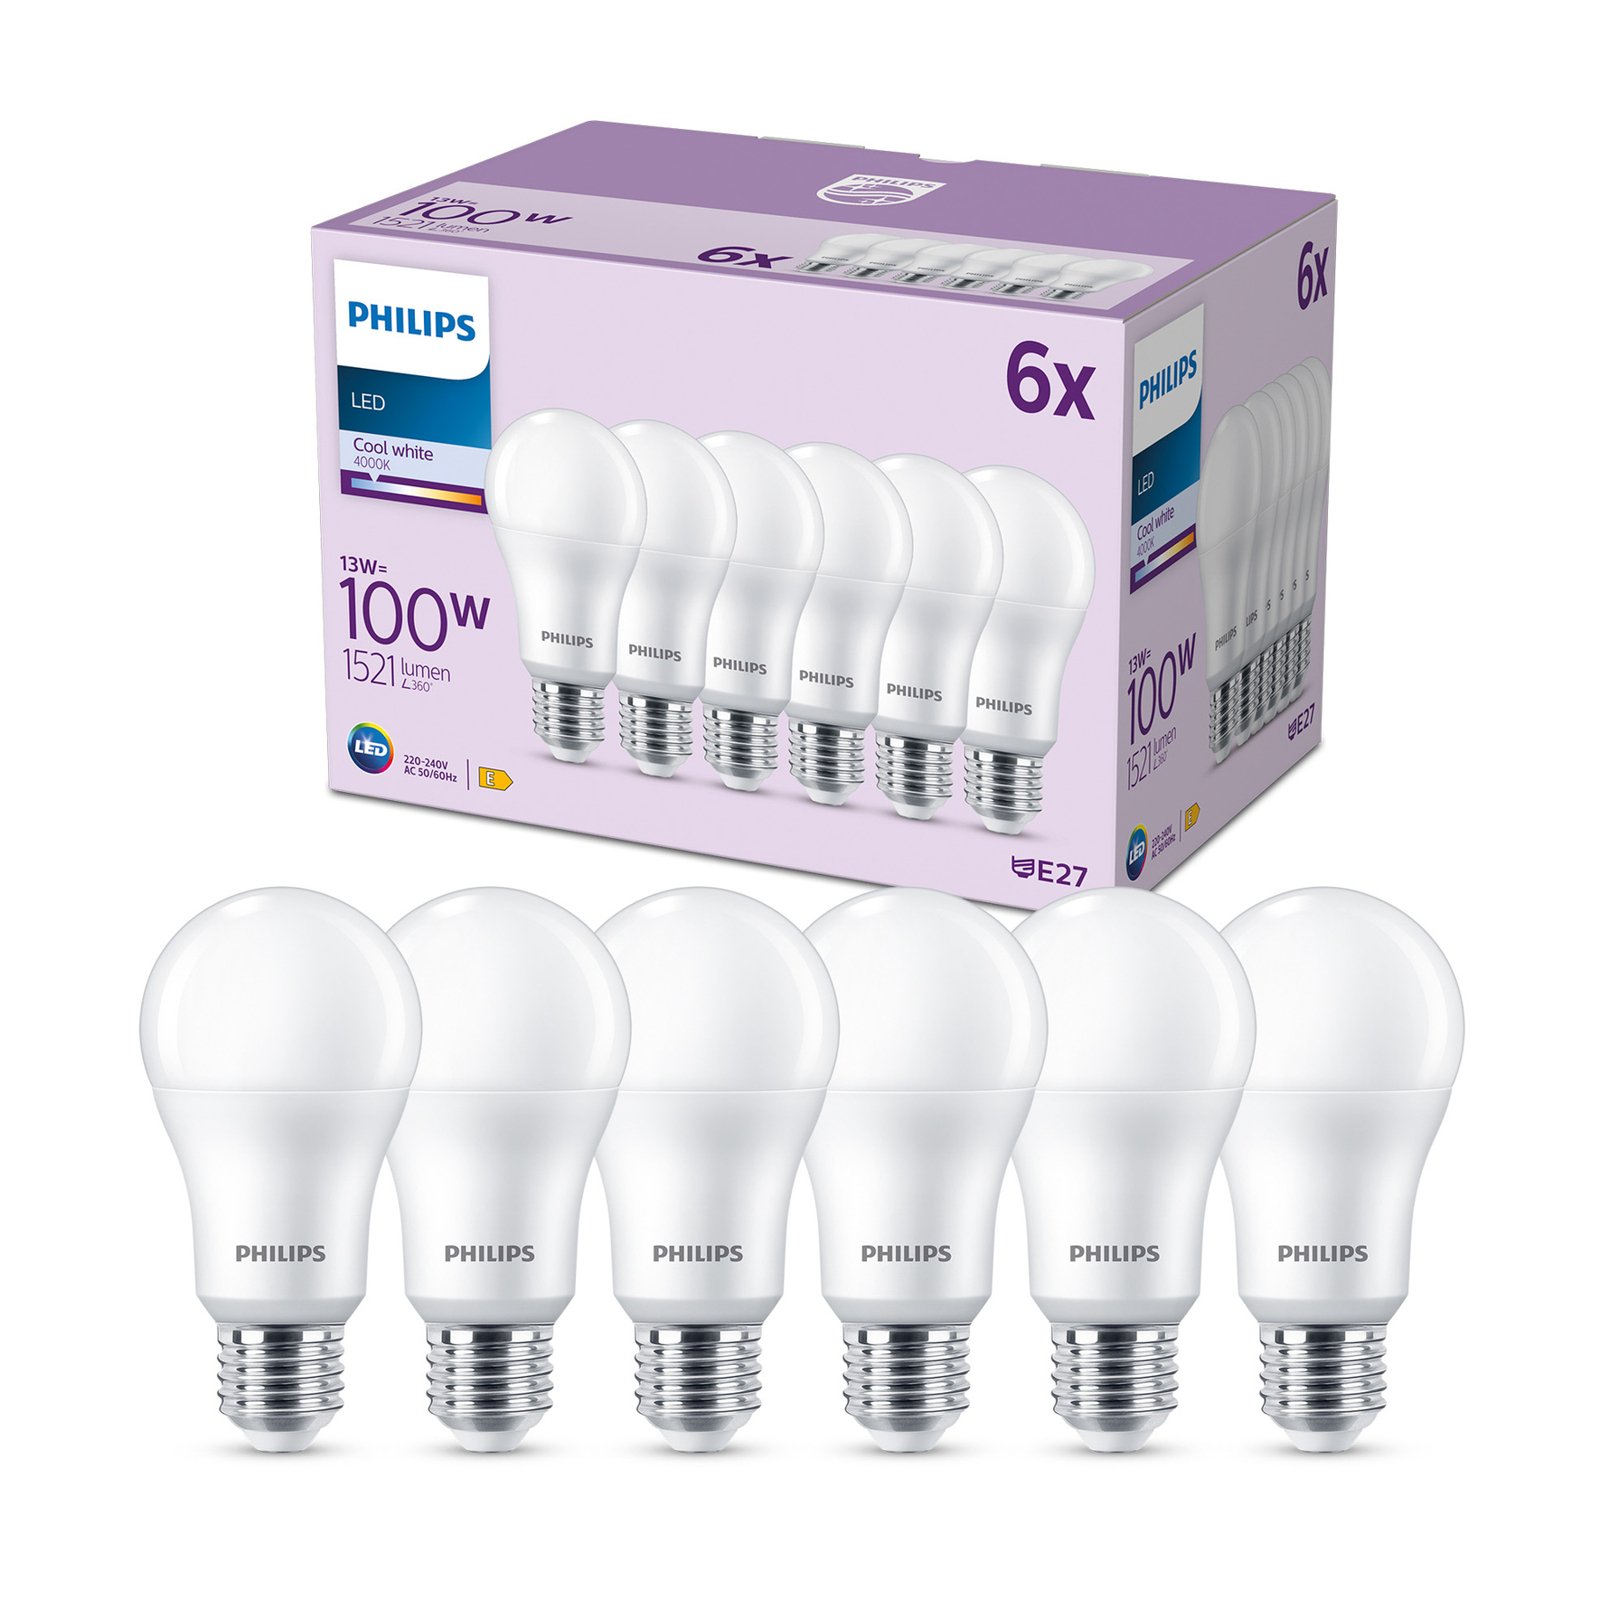 Philips LED-lampa E27 13W 1.521 lm matt 6-pack